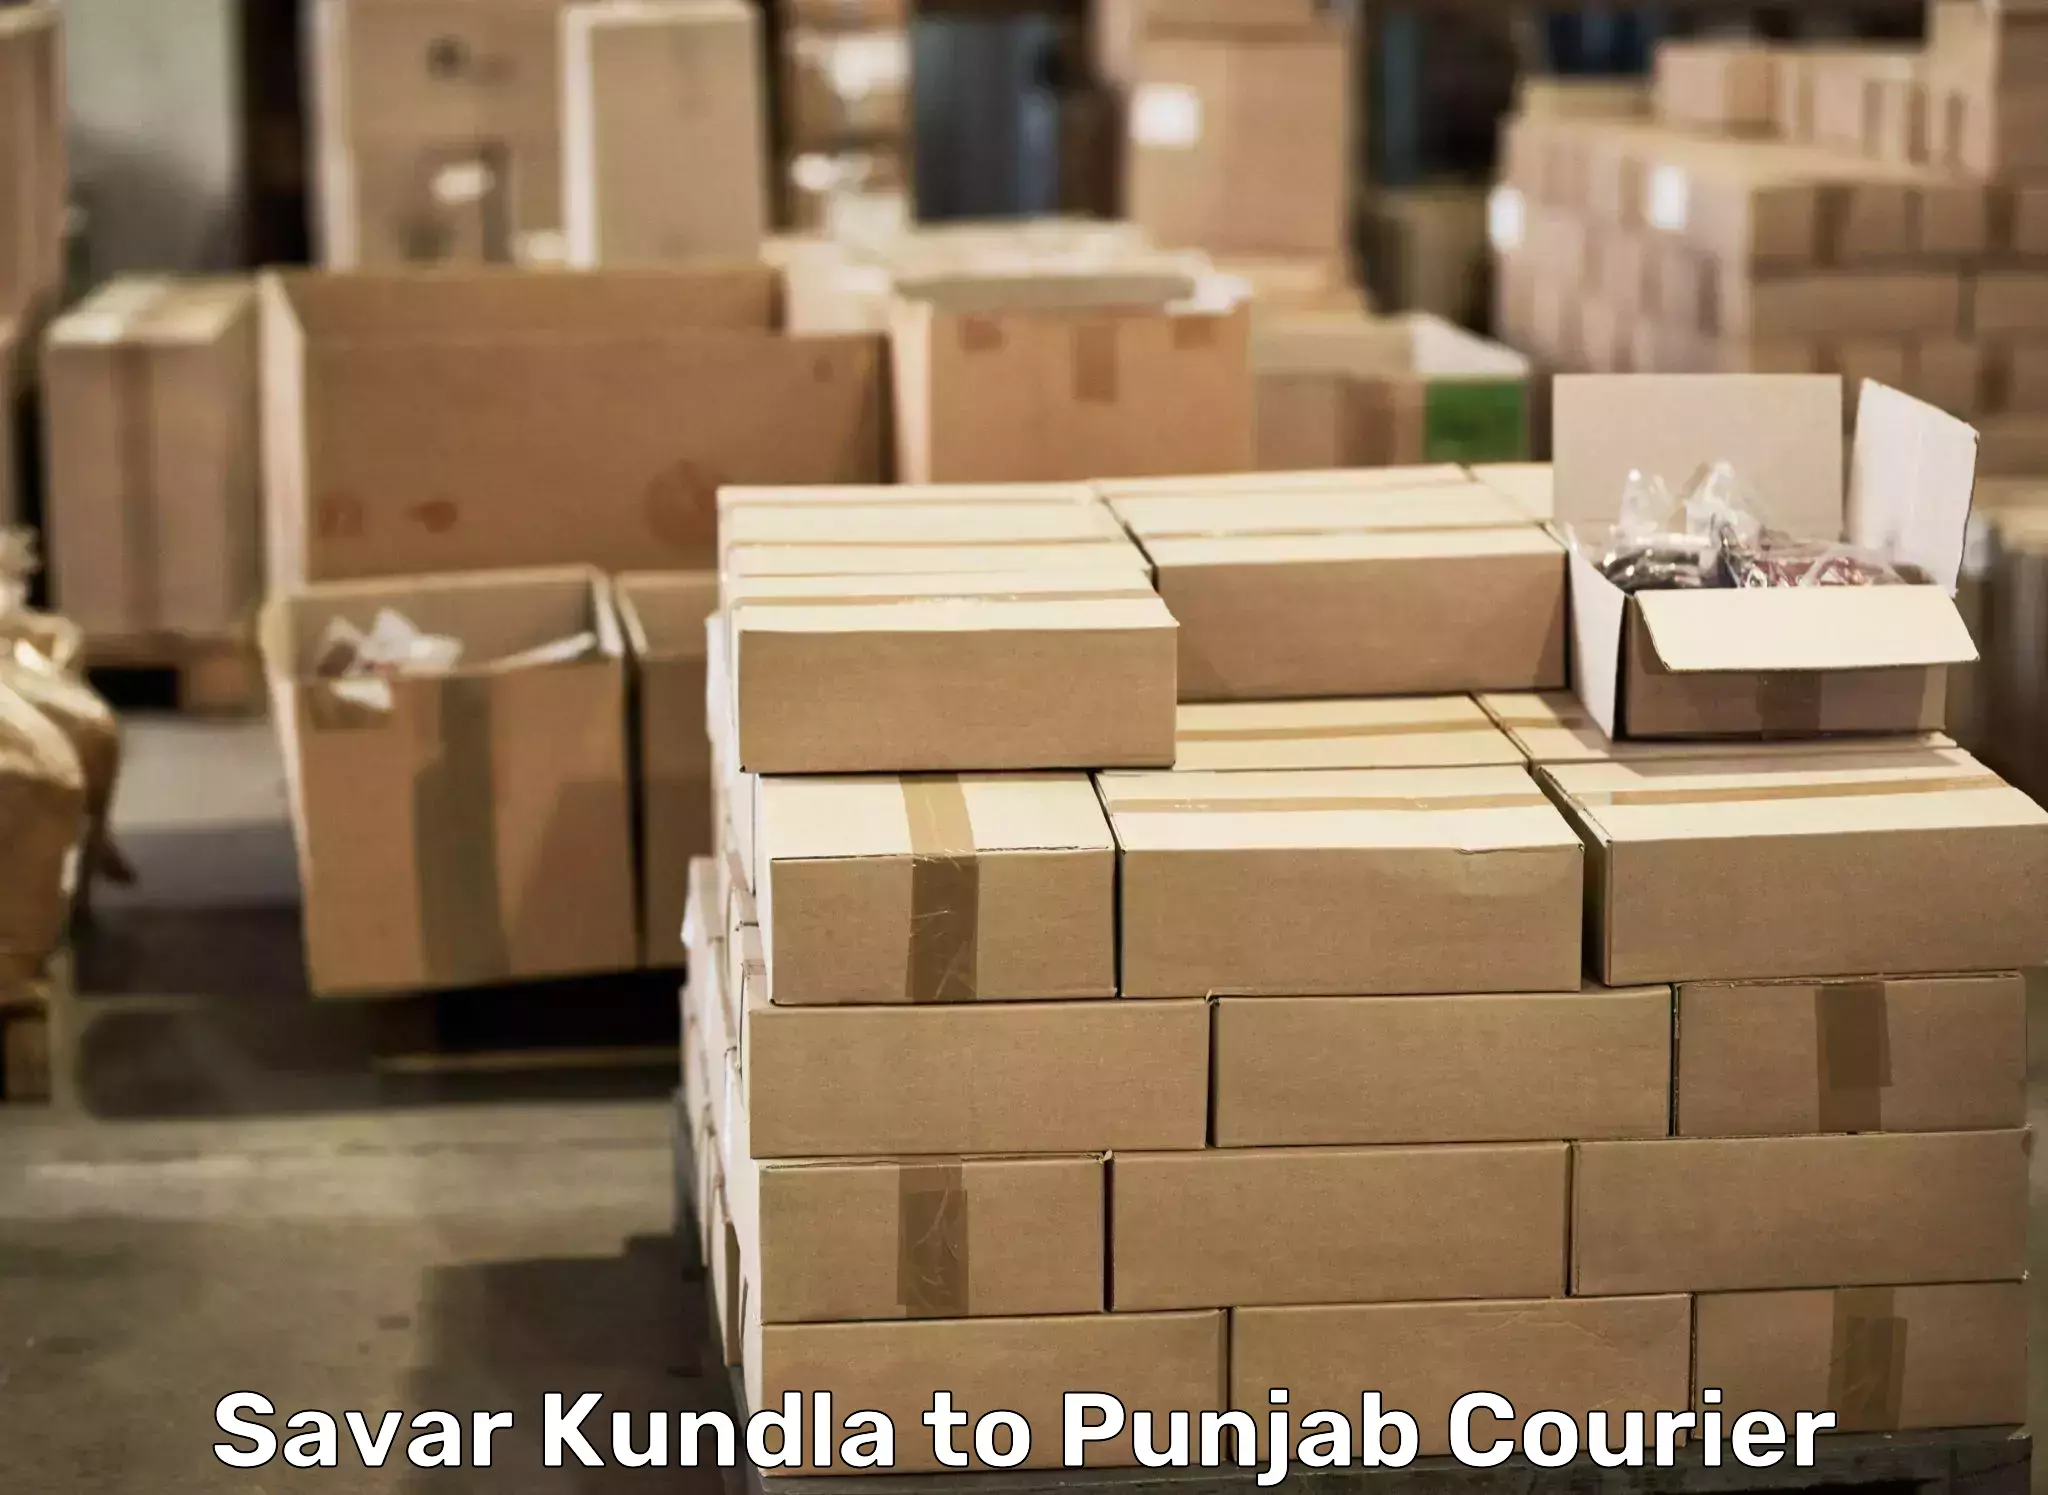 Stress-free household moving Savar Kundla to Amritsar